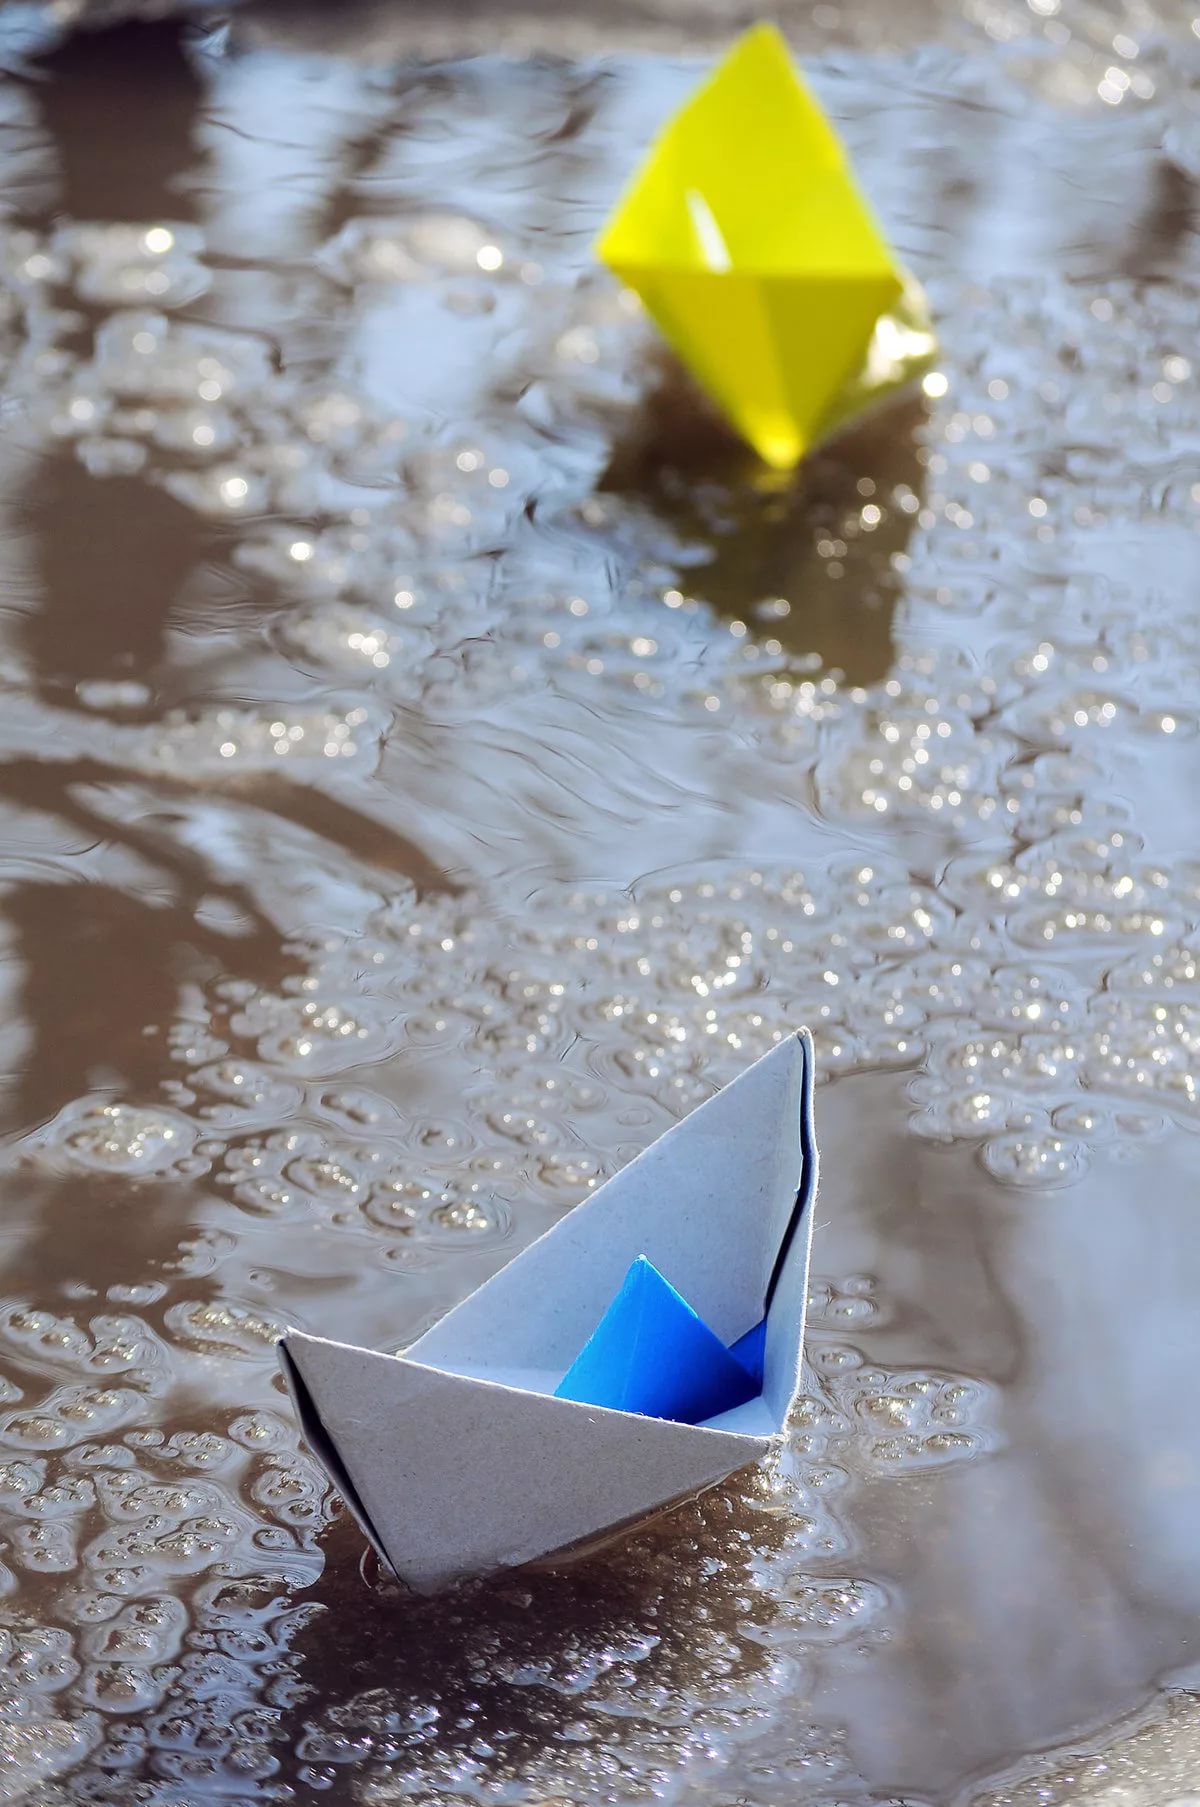 Бумажный кораблик плывет. Бумажный кораблик. Бумажный корабль. Бумажный кораблик в ручейке. Кораблик в ручейке.